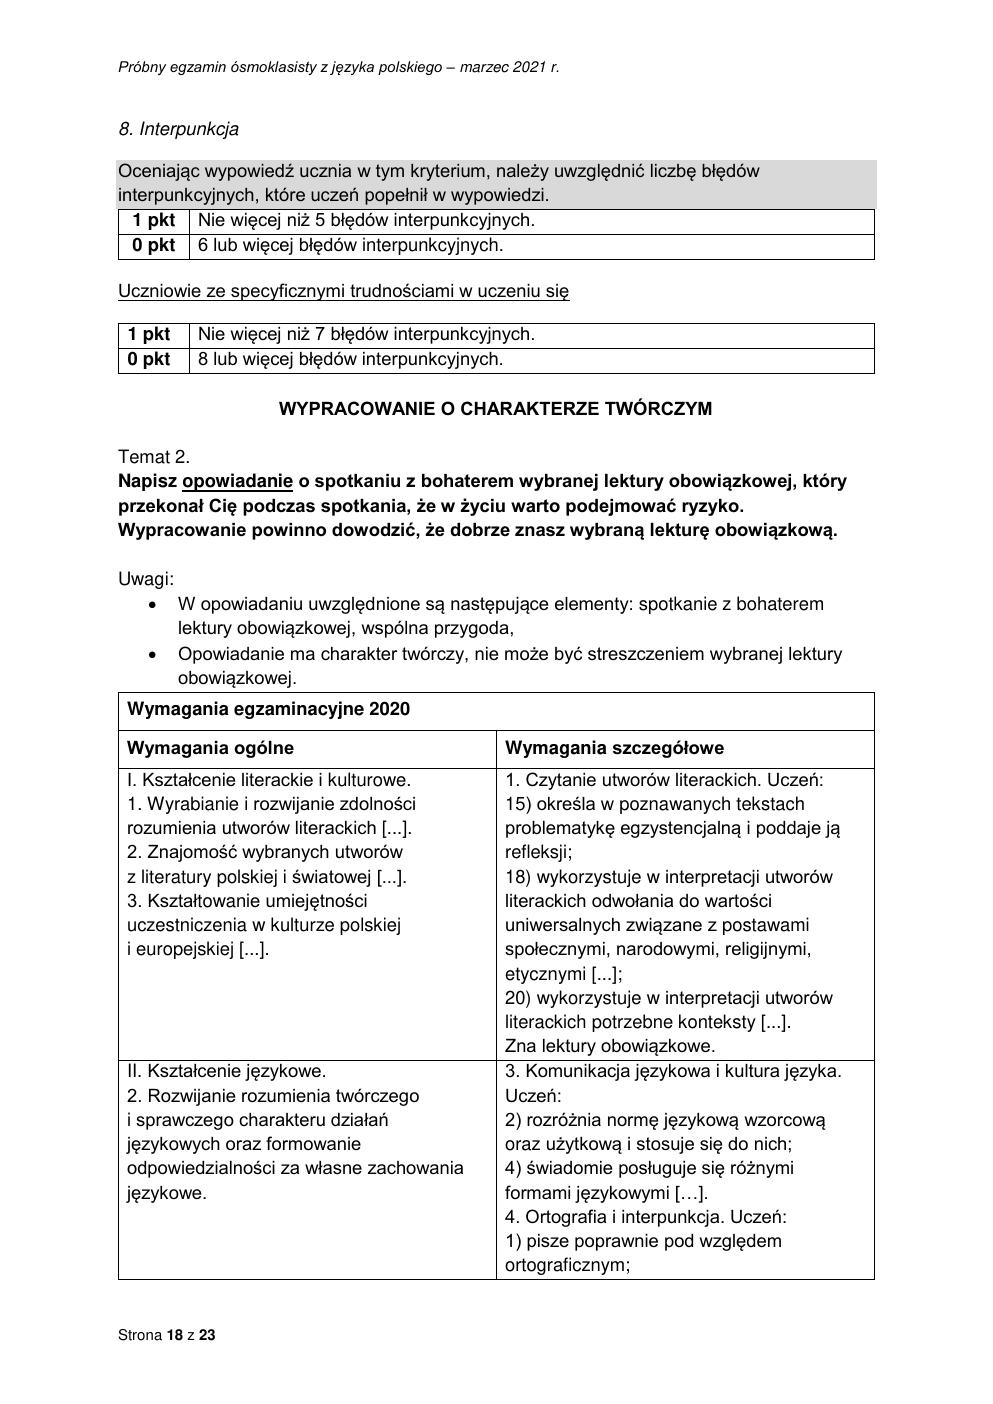 odpowiedzi - polski - egzamin ósmoklasisty 2021 próbny-18